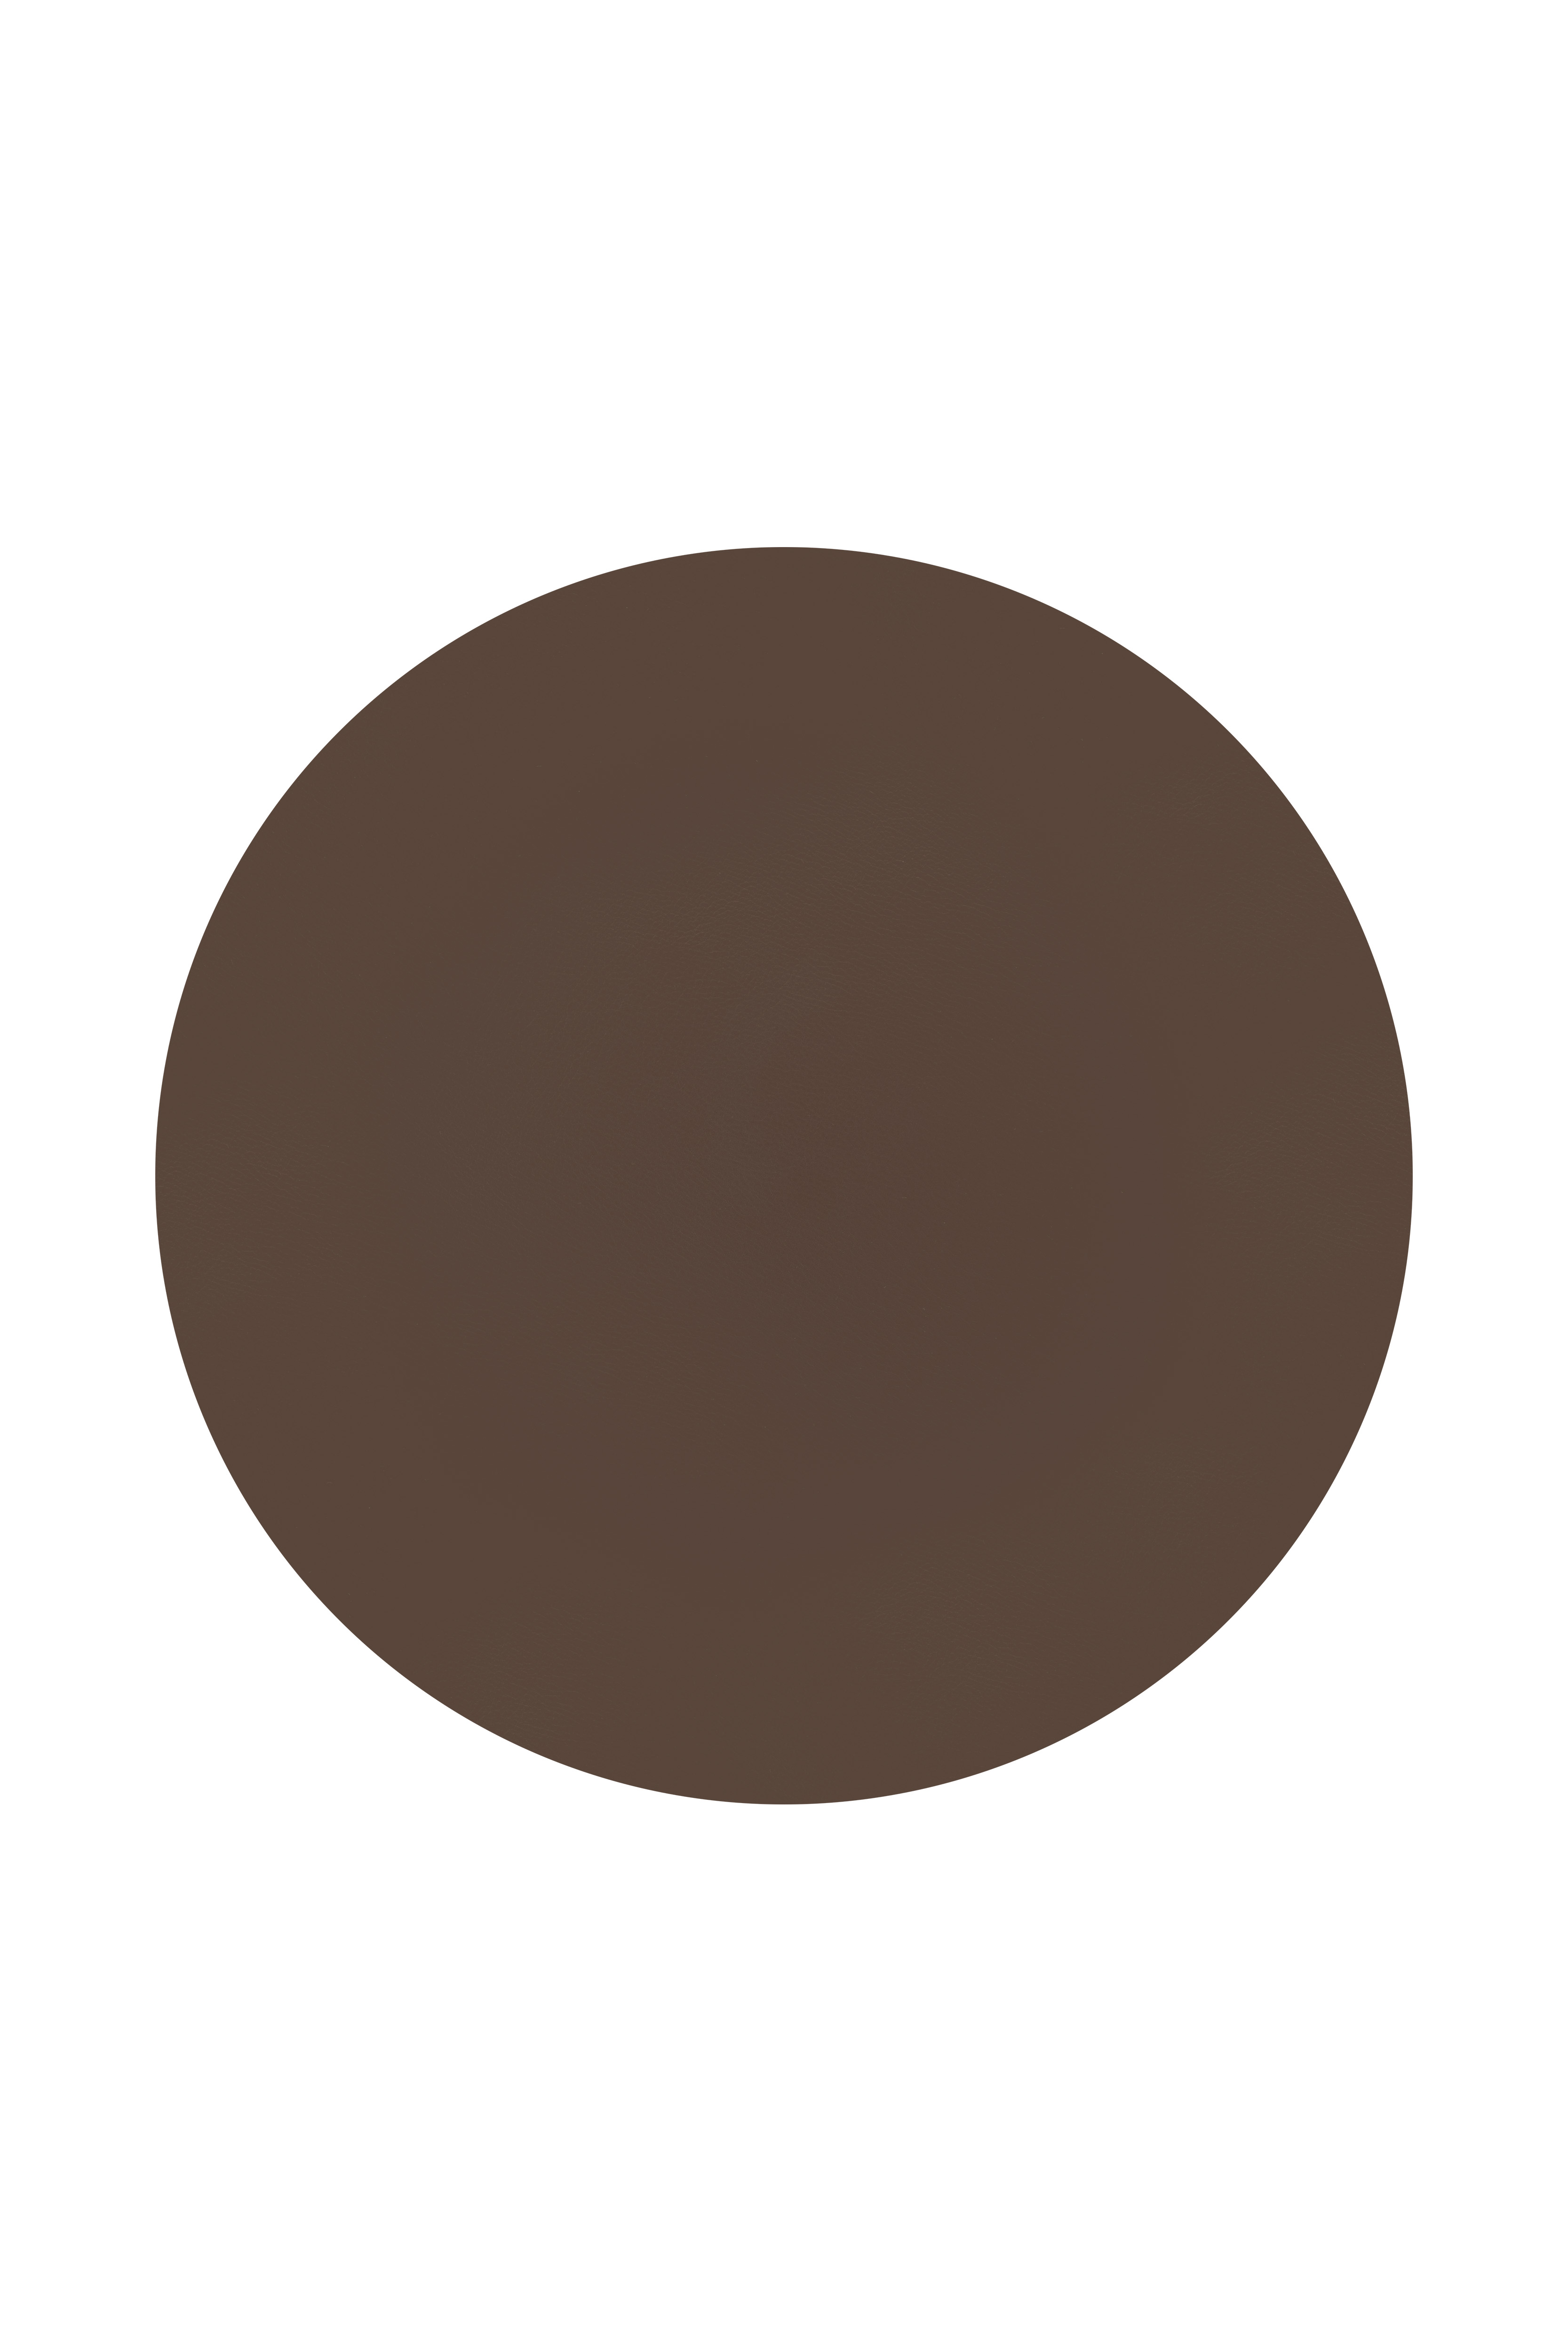 Set de table rond - TOGO - 38cm, brown